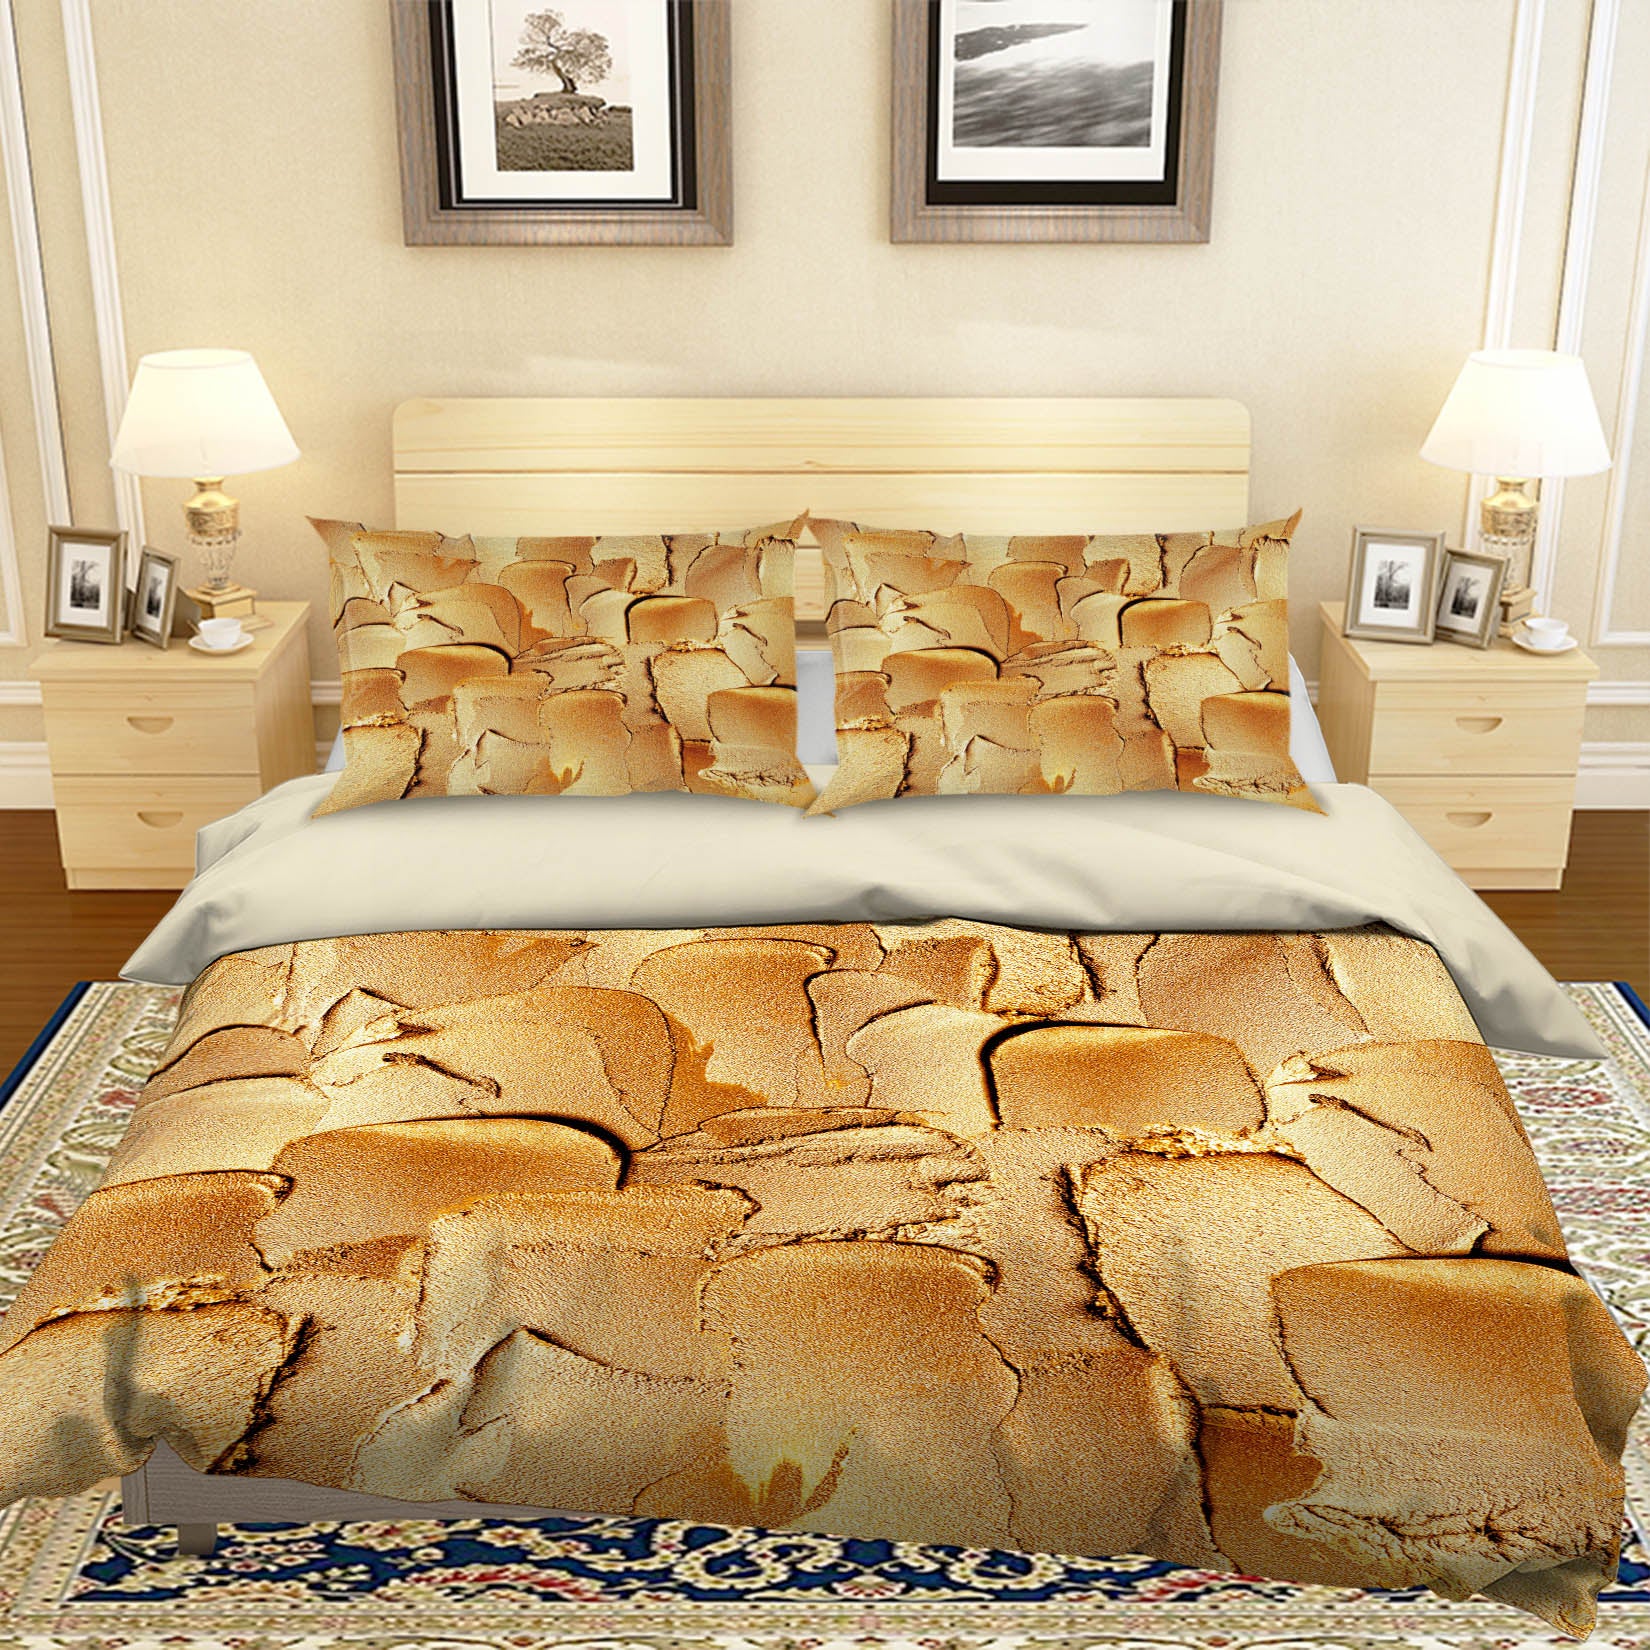 3D Yellow Powder 18135 Uta Naumann Bedding Bed Pillowcases Quilt